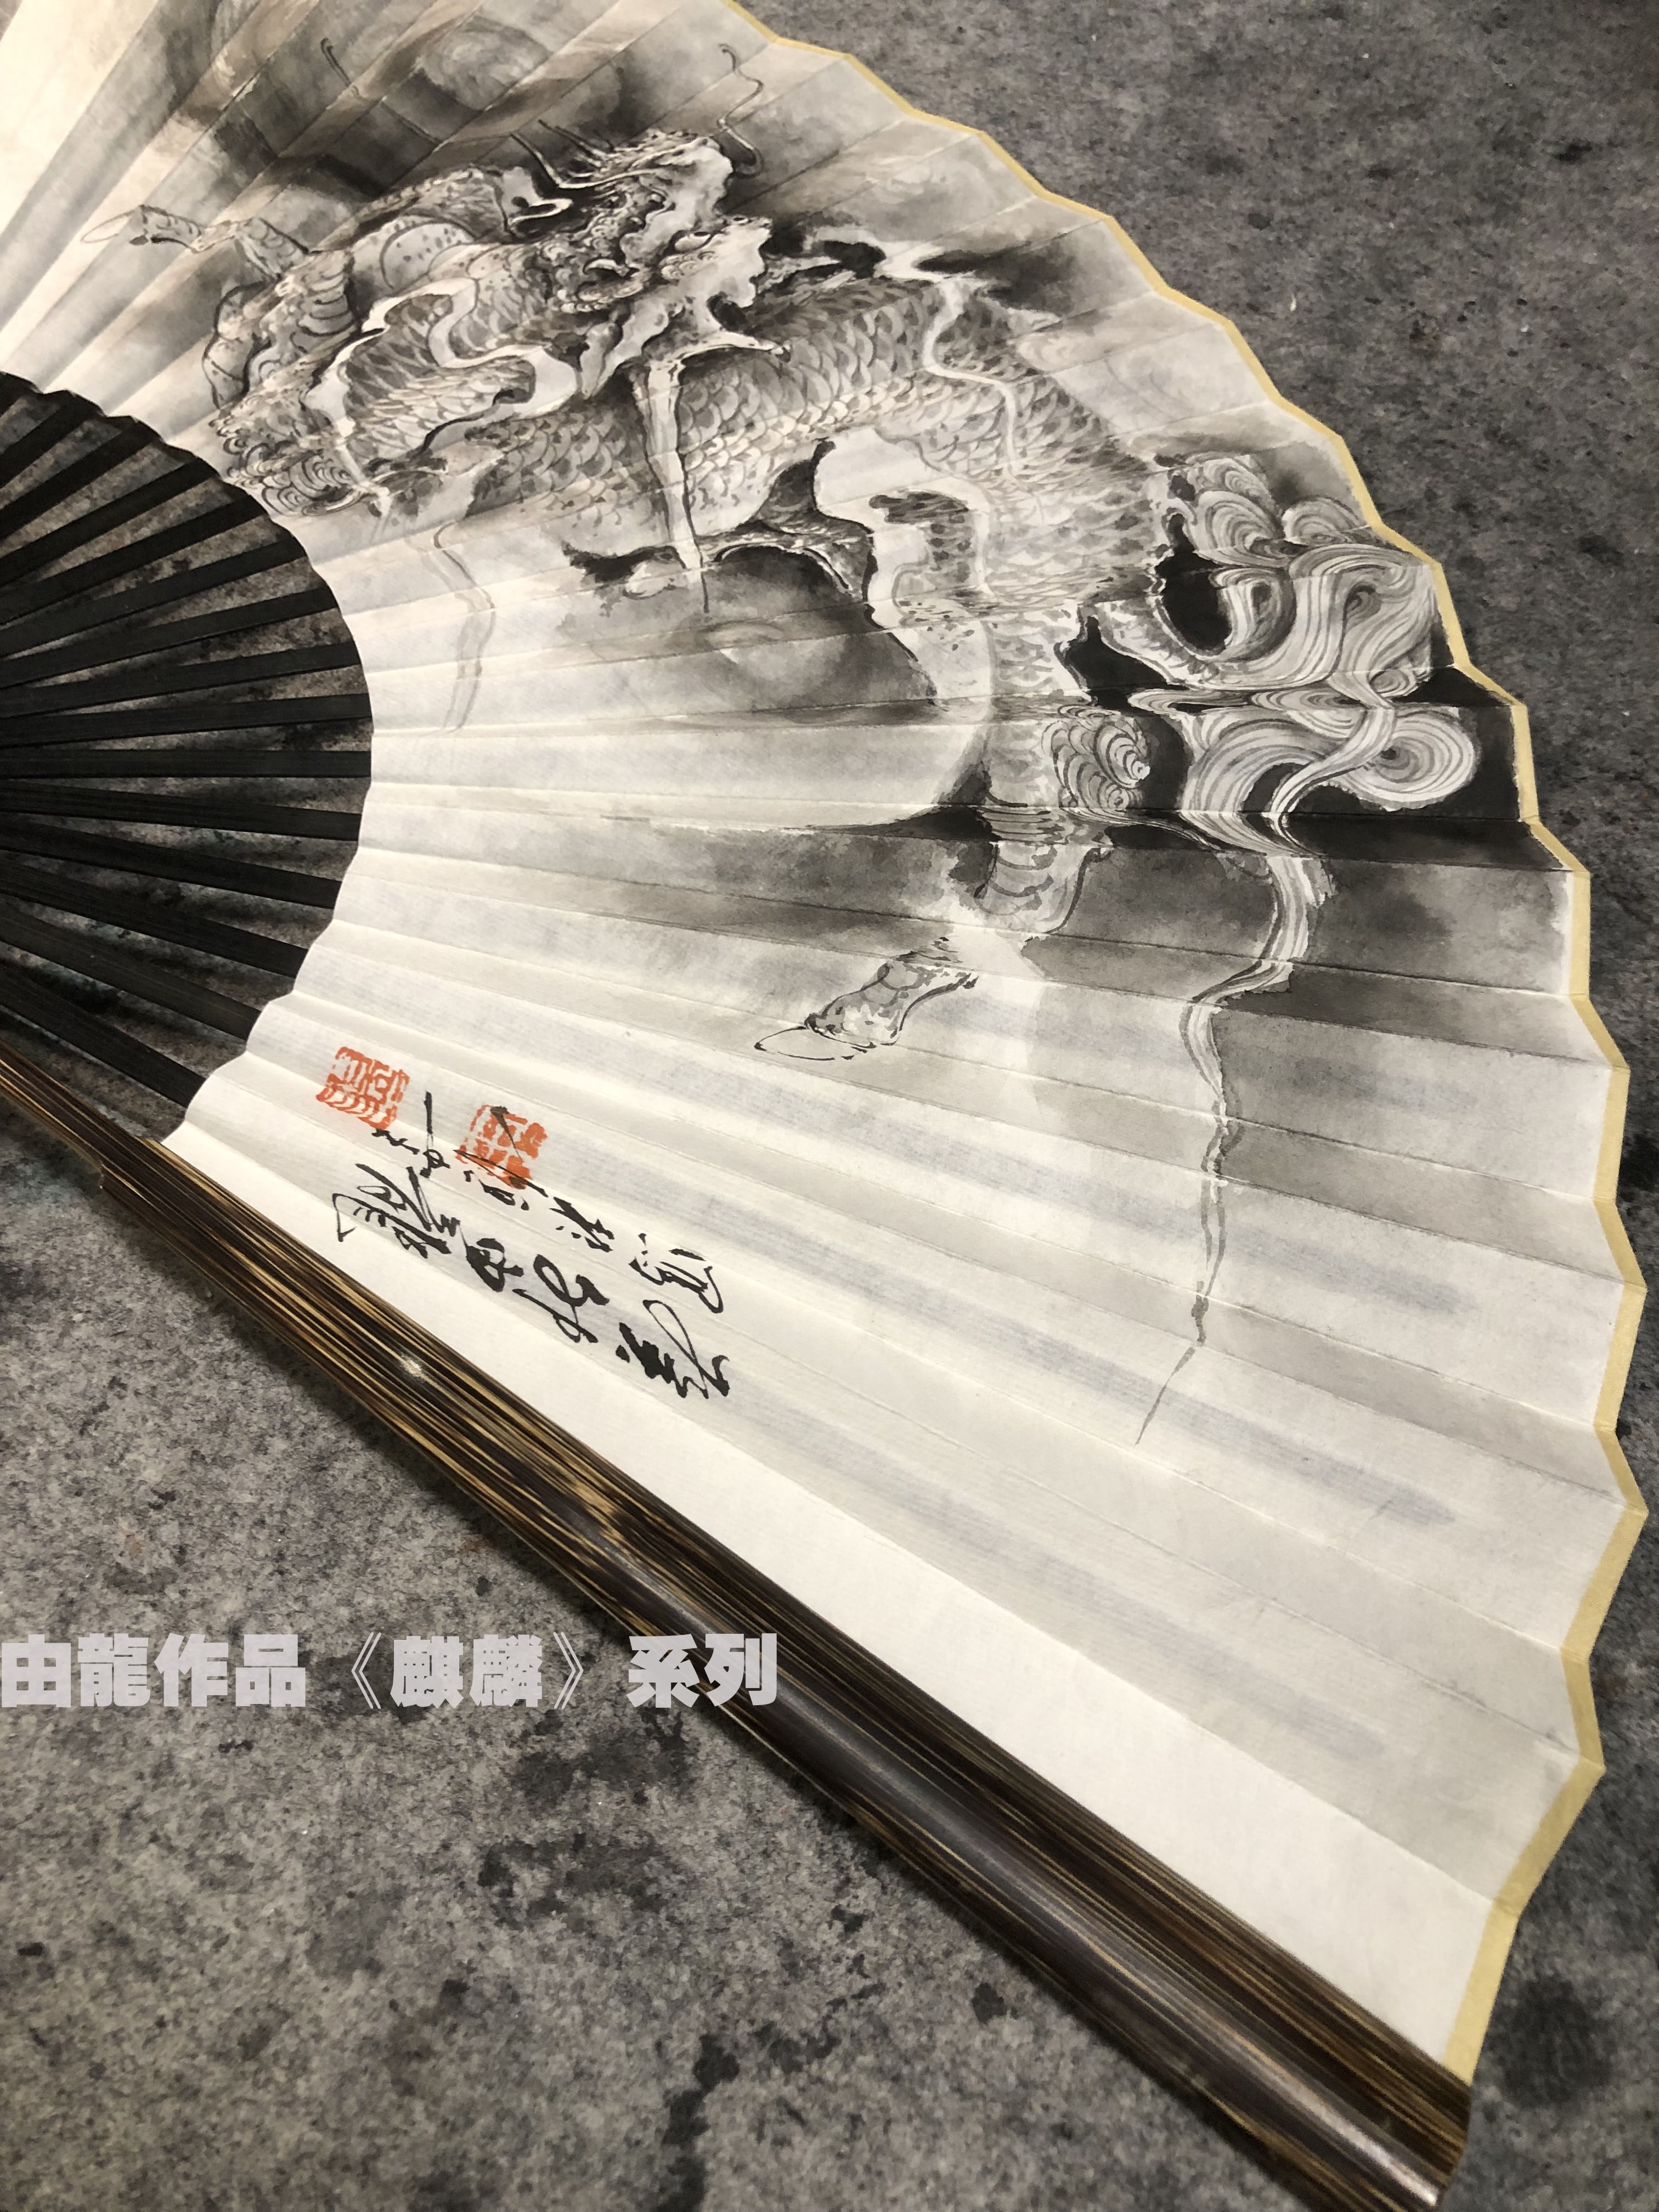 由龙：中华民族龙纹研究与工艺艺术品应用-环球科技热点